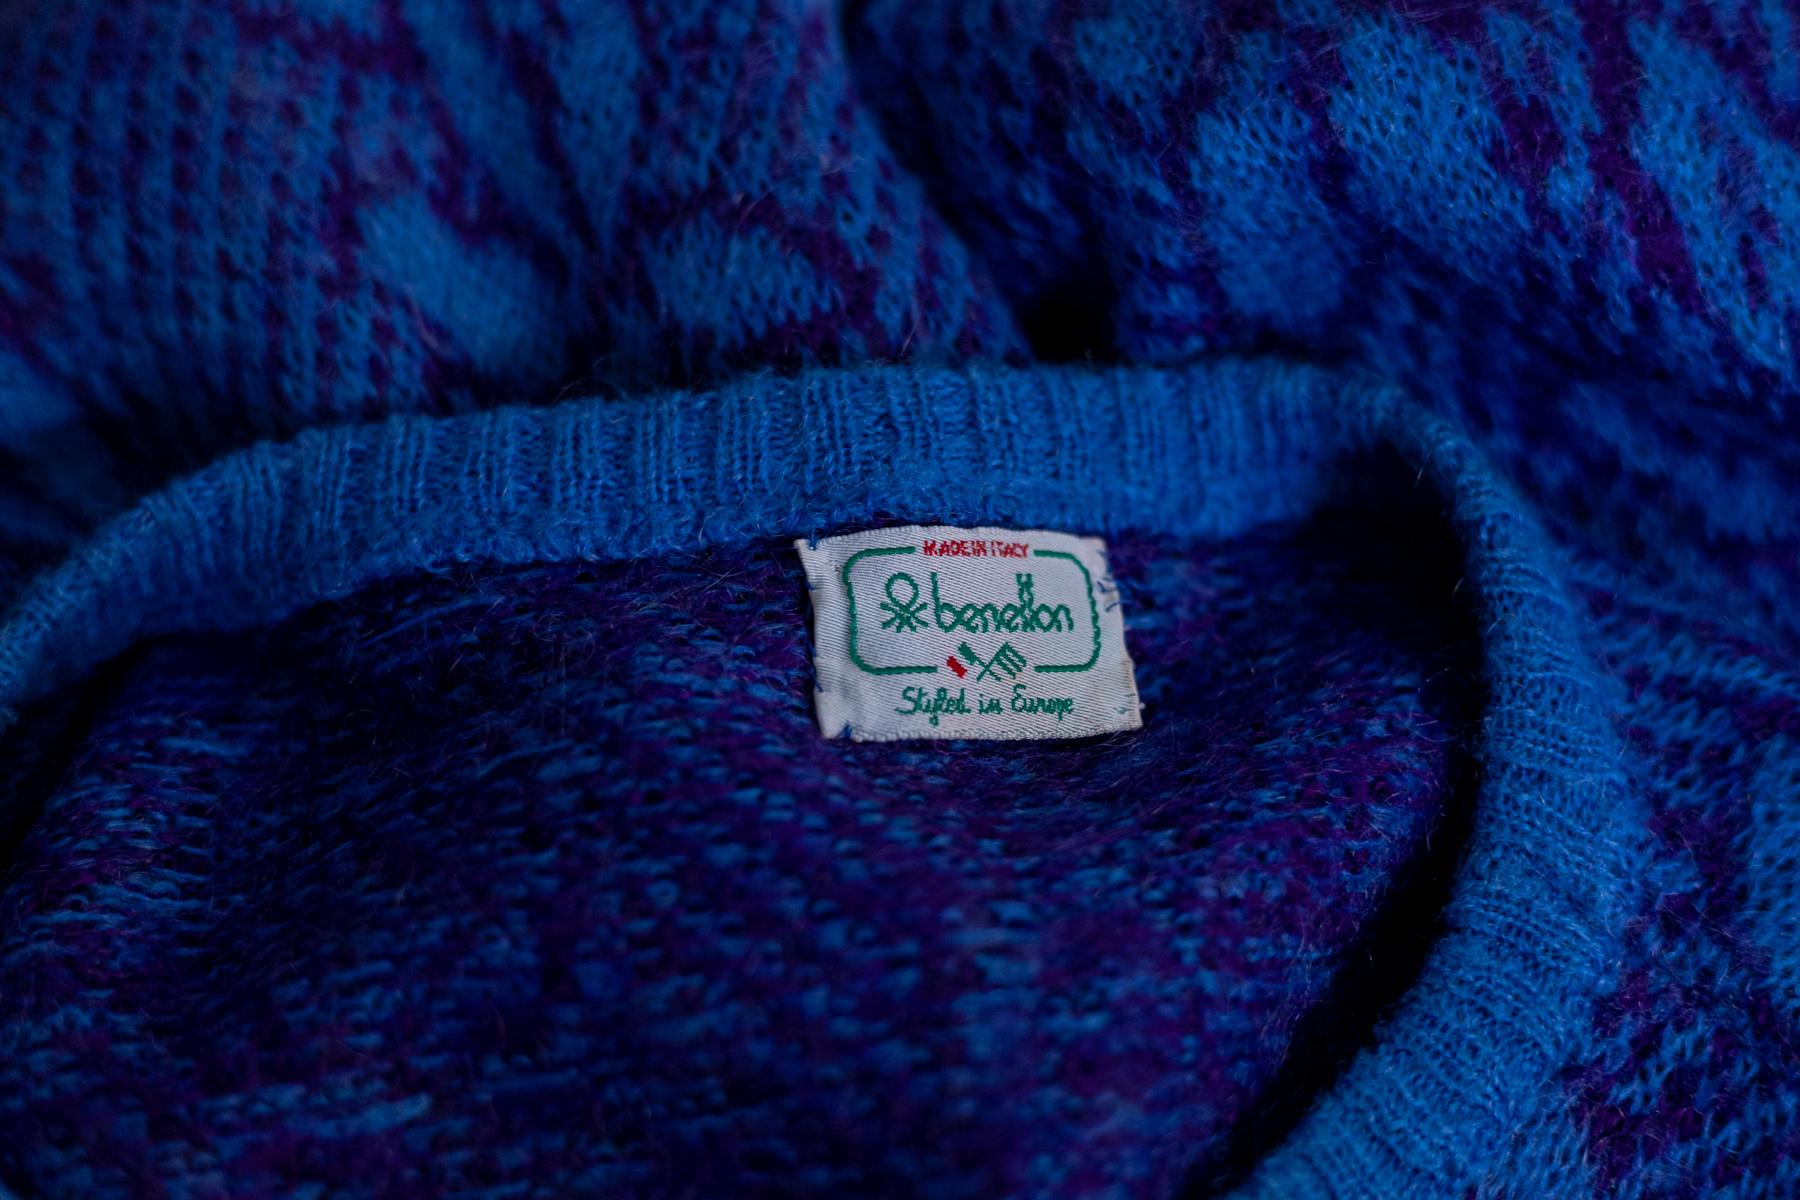 Seltener Rock- und Pulloveranzug von Benetton aus den 1990er Jahren, hergestellt in Italien.
ORIGINALETIKETT.
Der Anzug besteht aus einem Pullover und einem Rock, die vollständig aus blauer Wolle gefertigt sind.
Der Pullover hat lange Ärmel mit